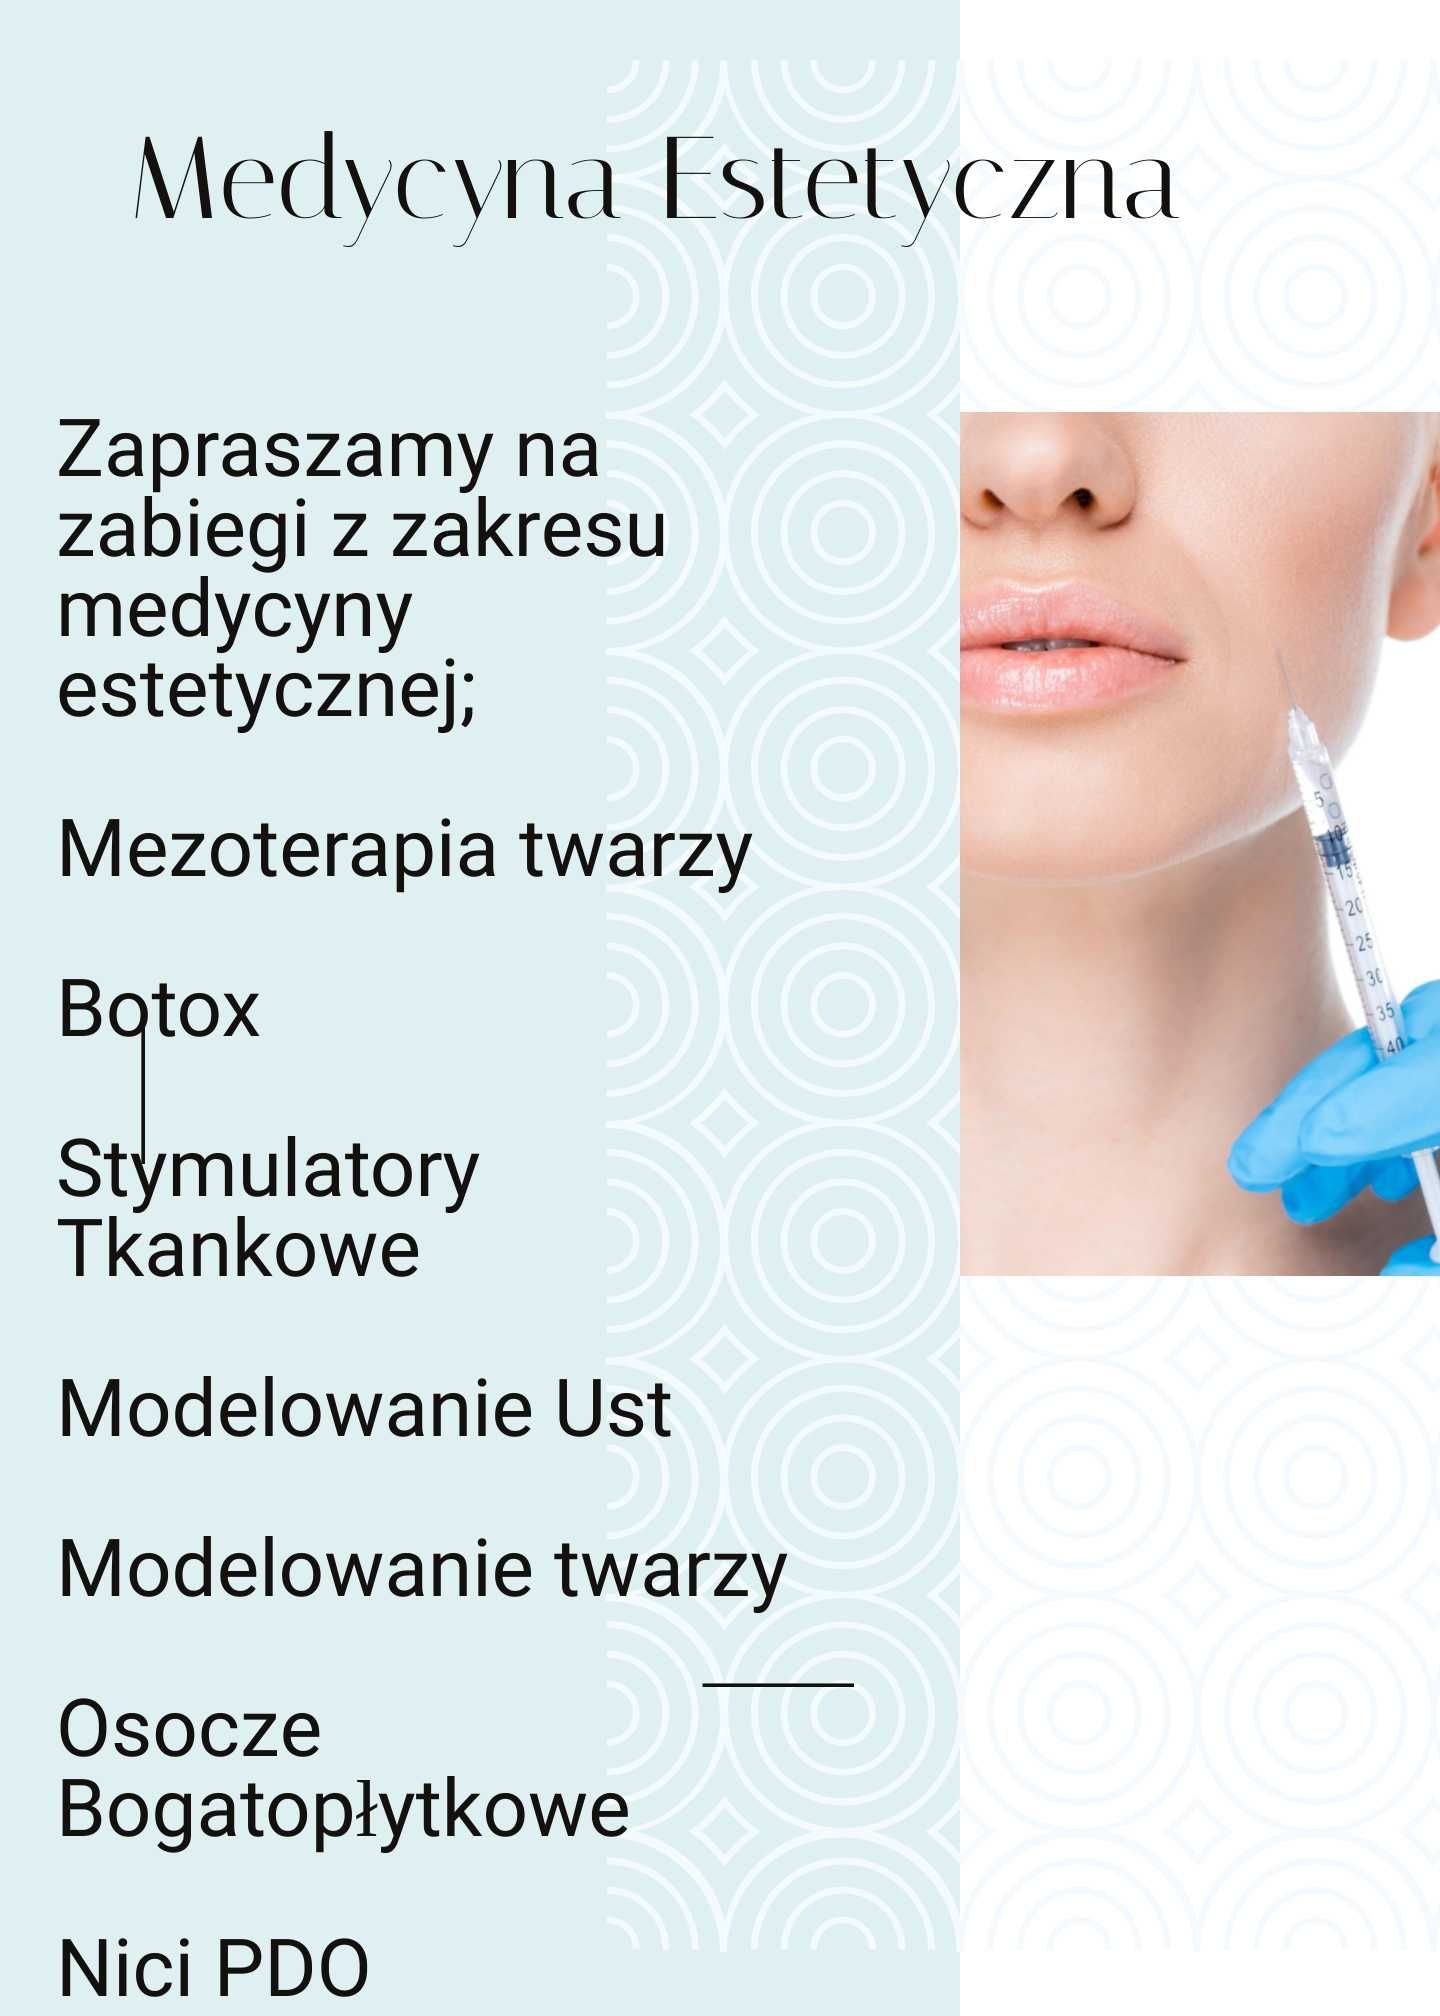 Zabiegi medycyny estetycznej/Botox 250zł/Osocze Bogatopłytkowe 300zł